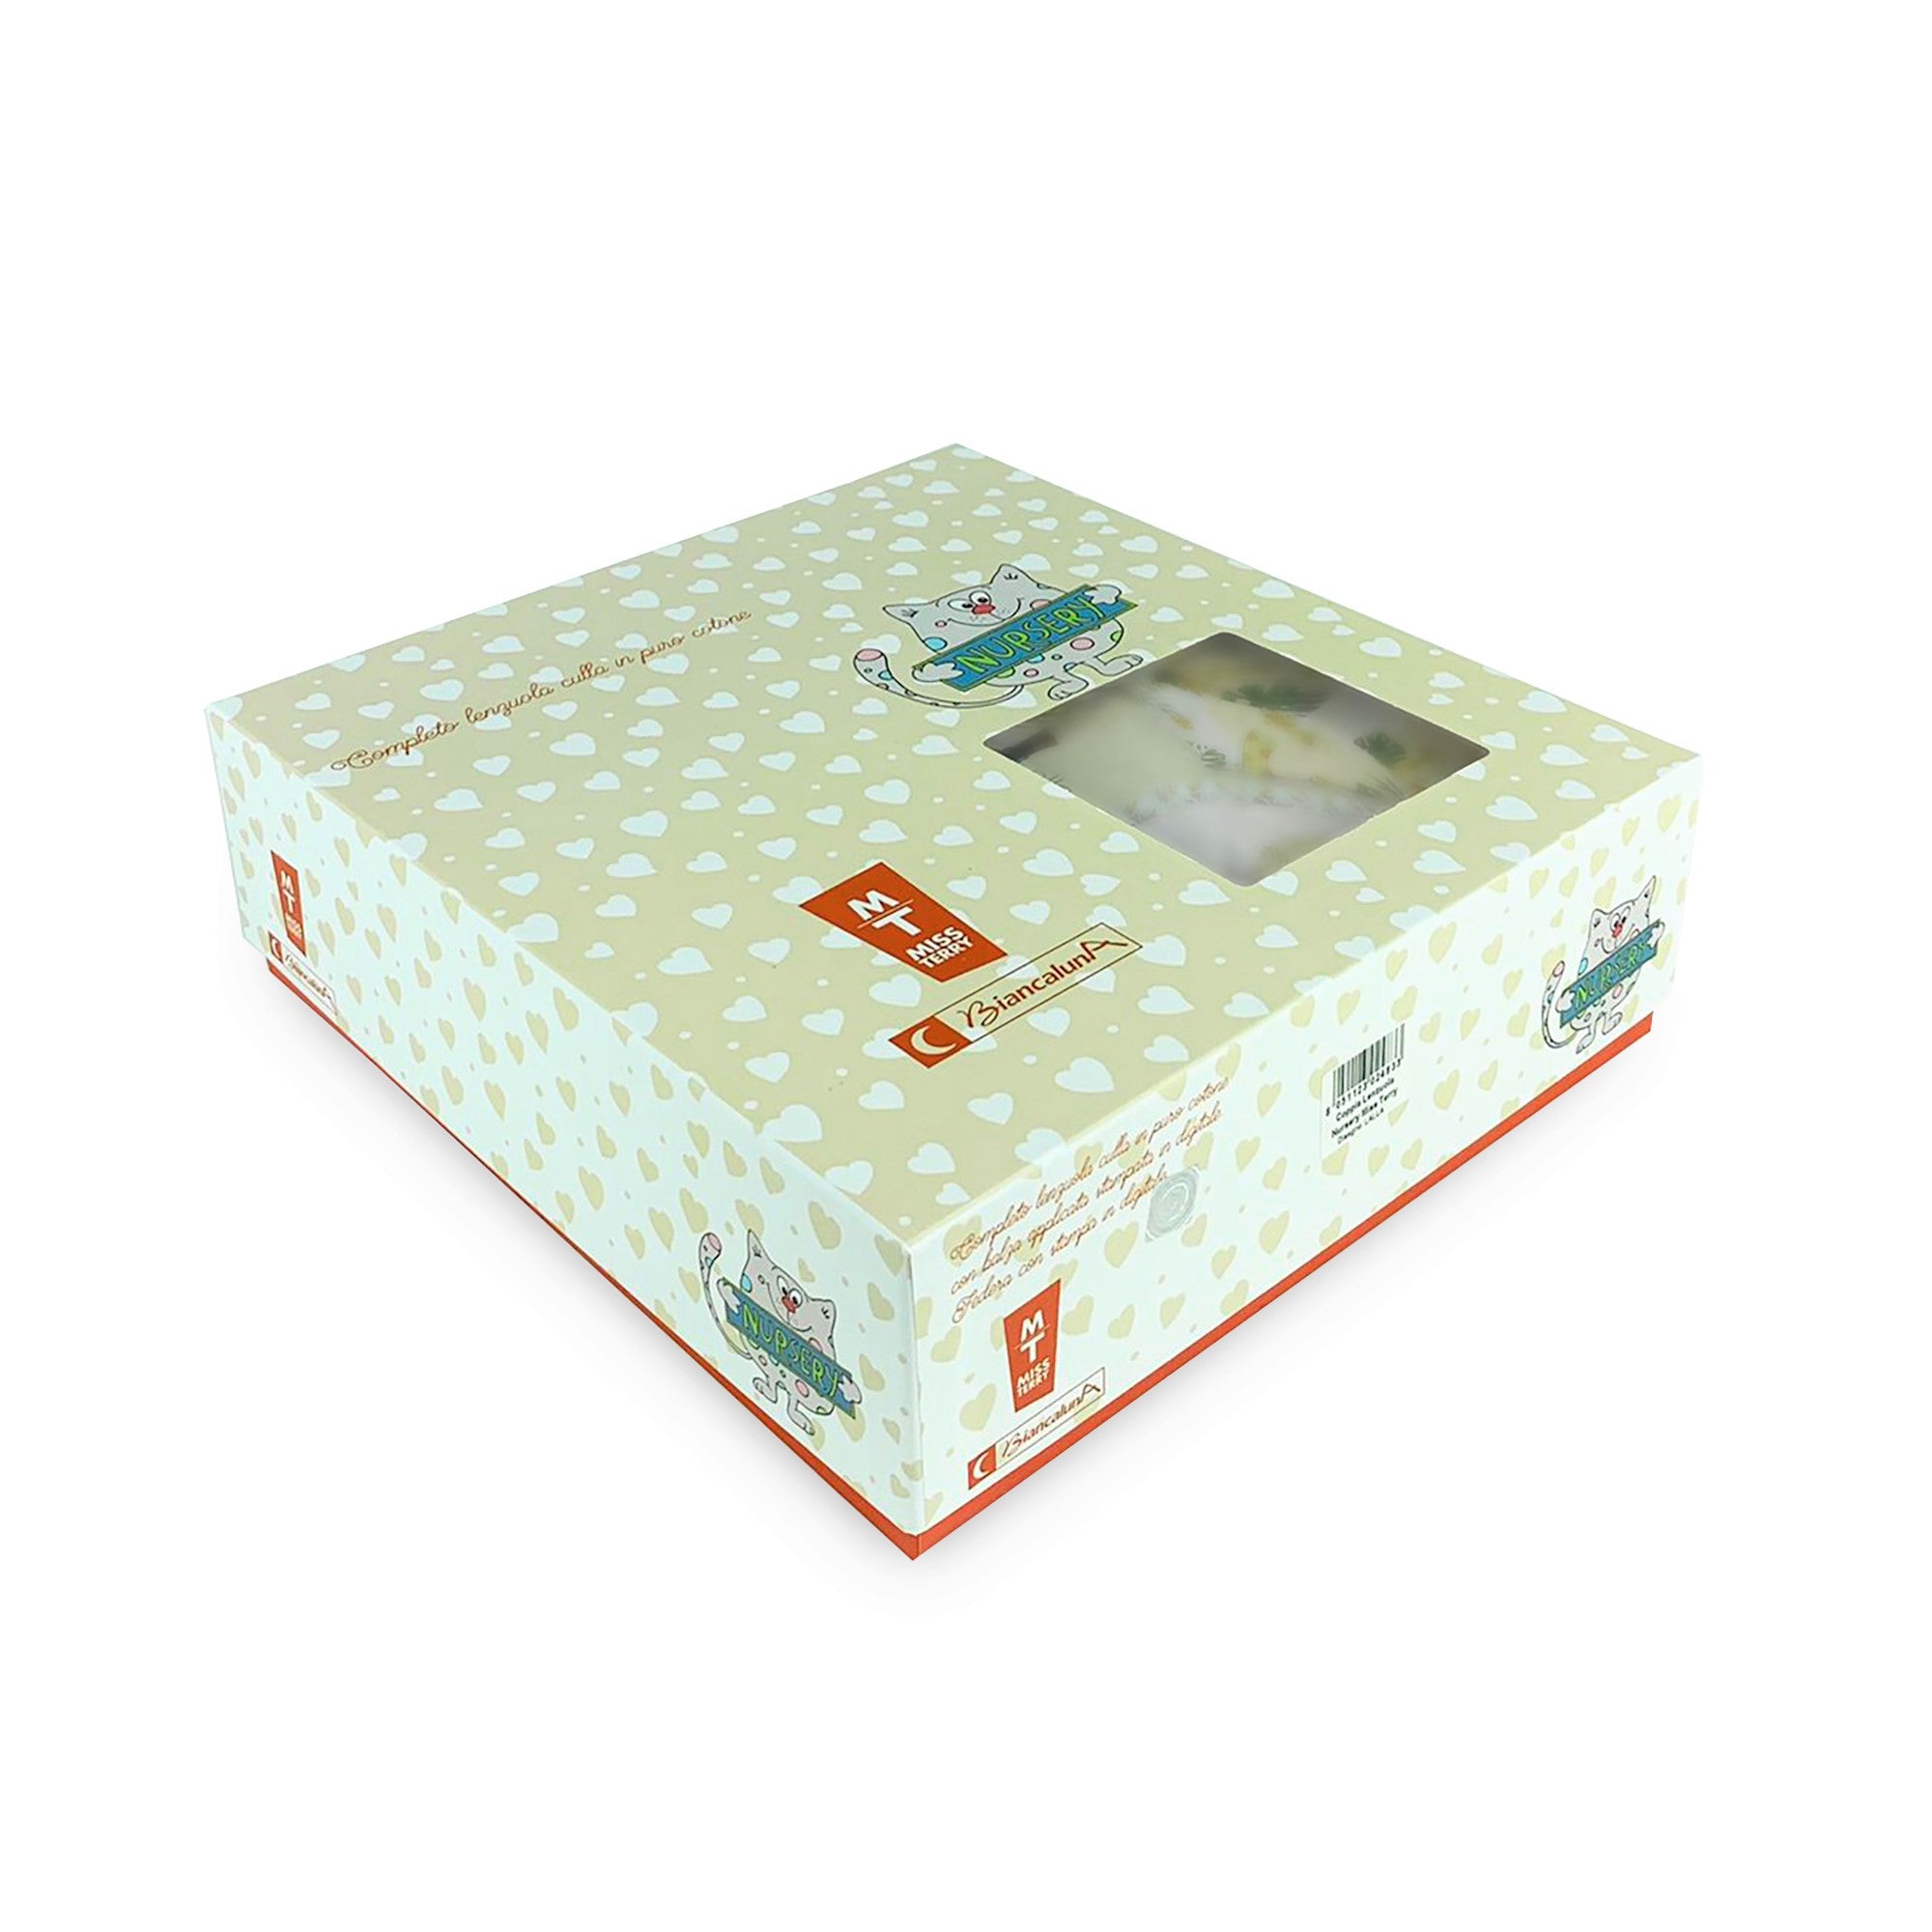 Completo lenzuola culla lettino in cotone Biancaluna stampa digital set 3pz 4155